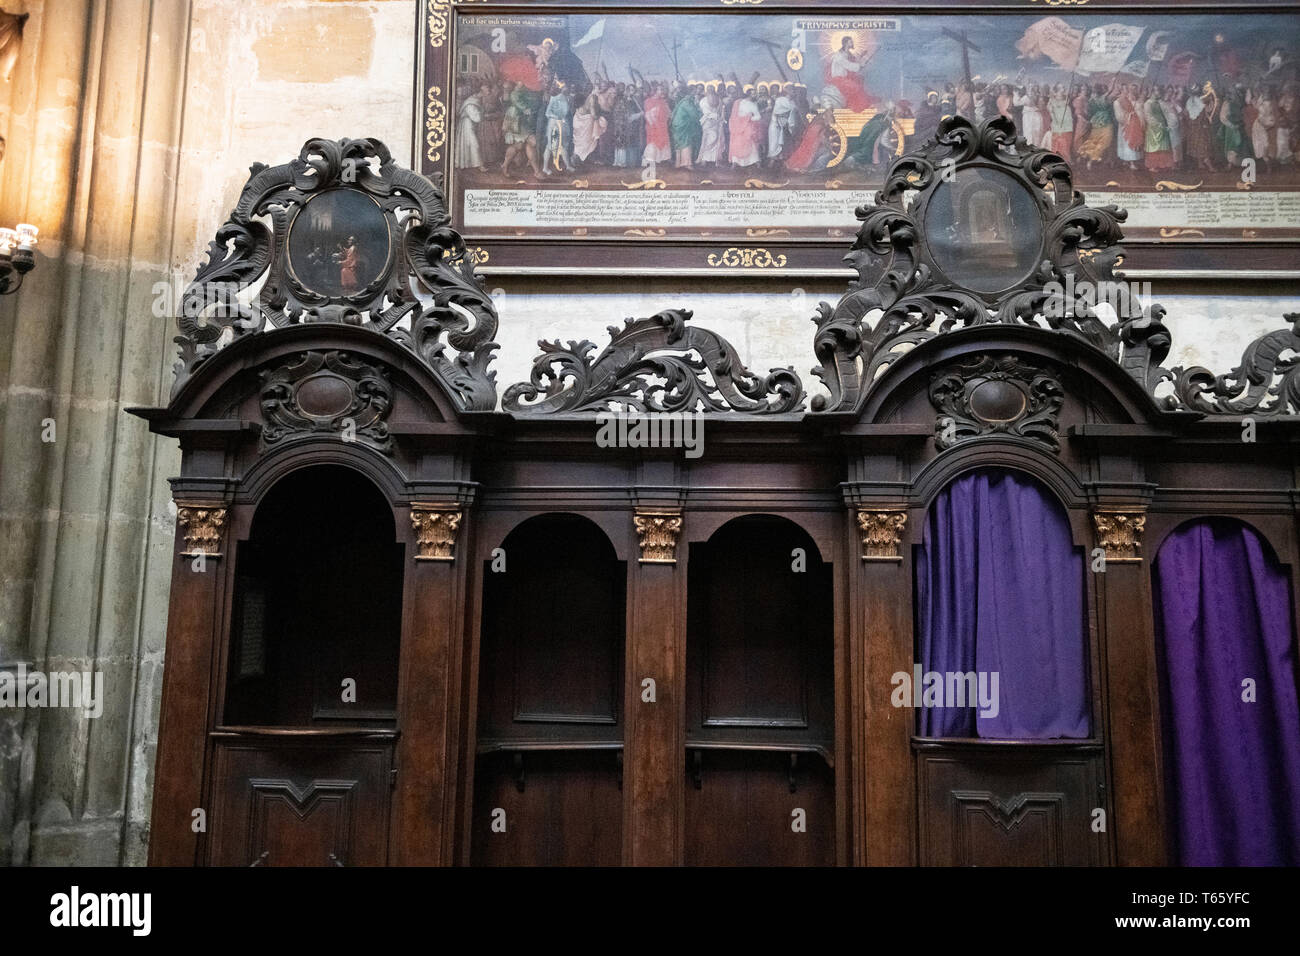 Confession booth, St Vitus Cathedral, Prague Castle, Prague, Czech Republic Stock Photo